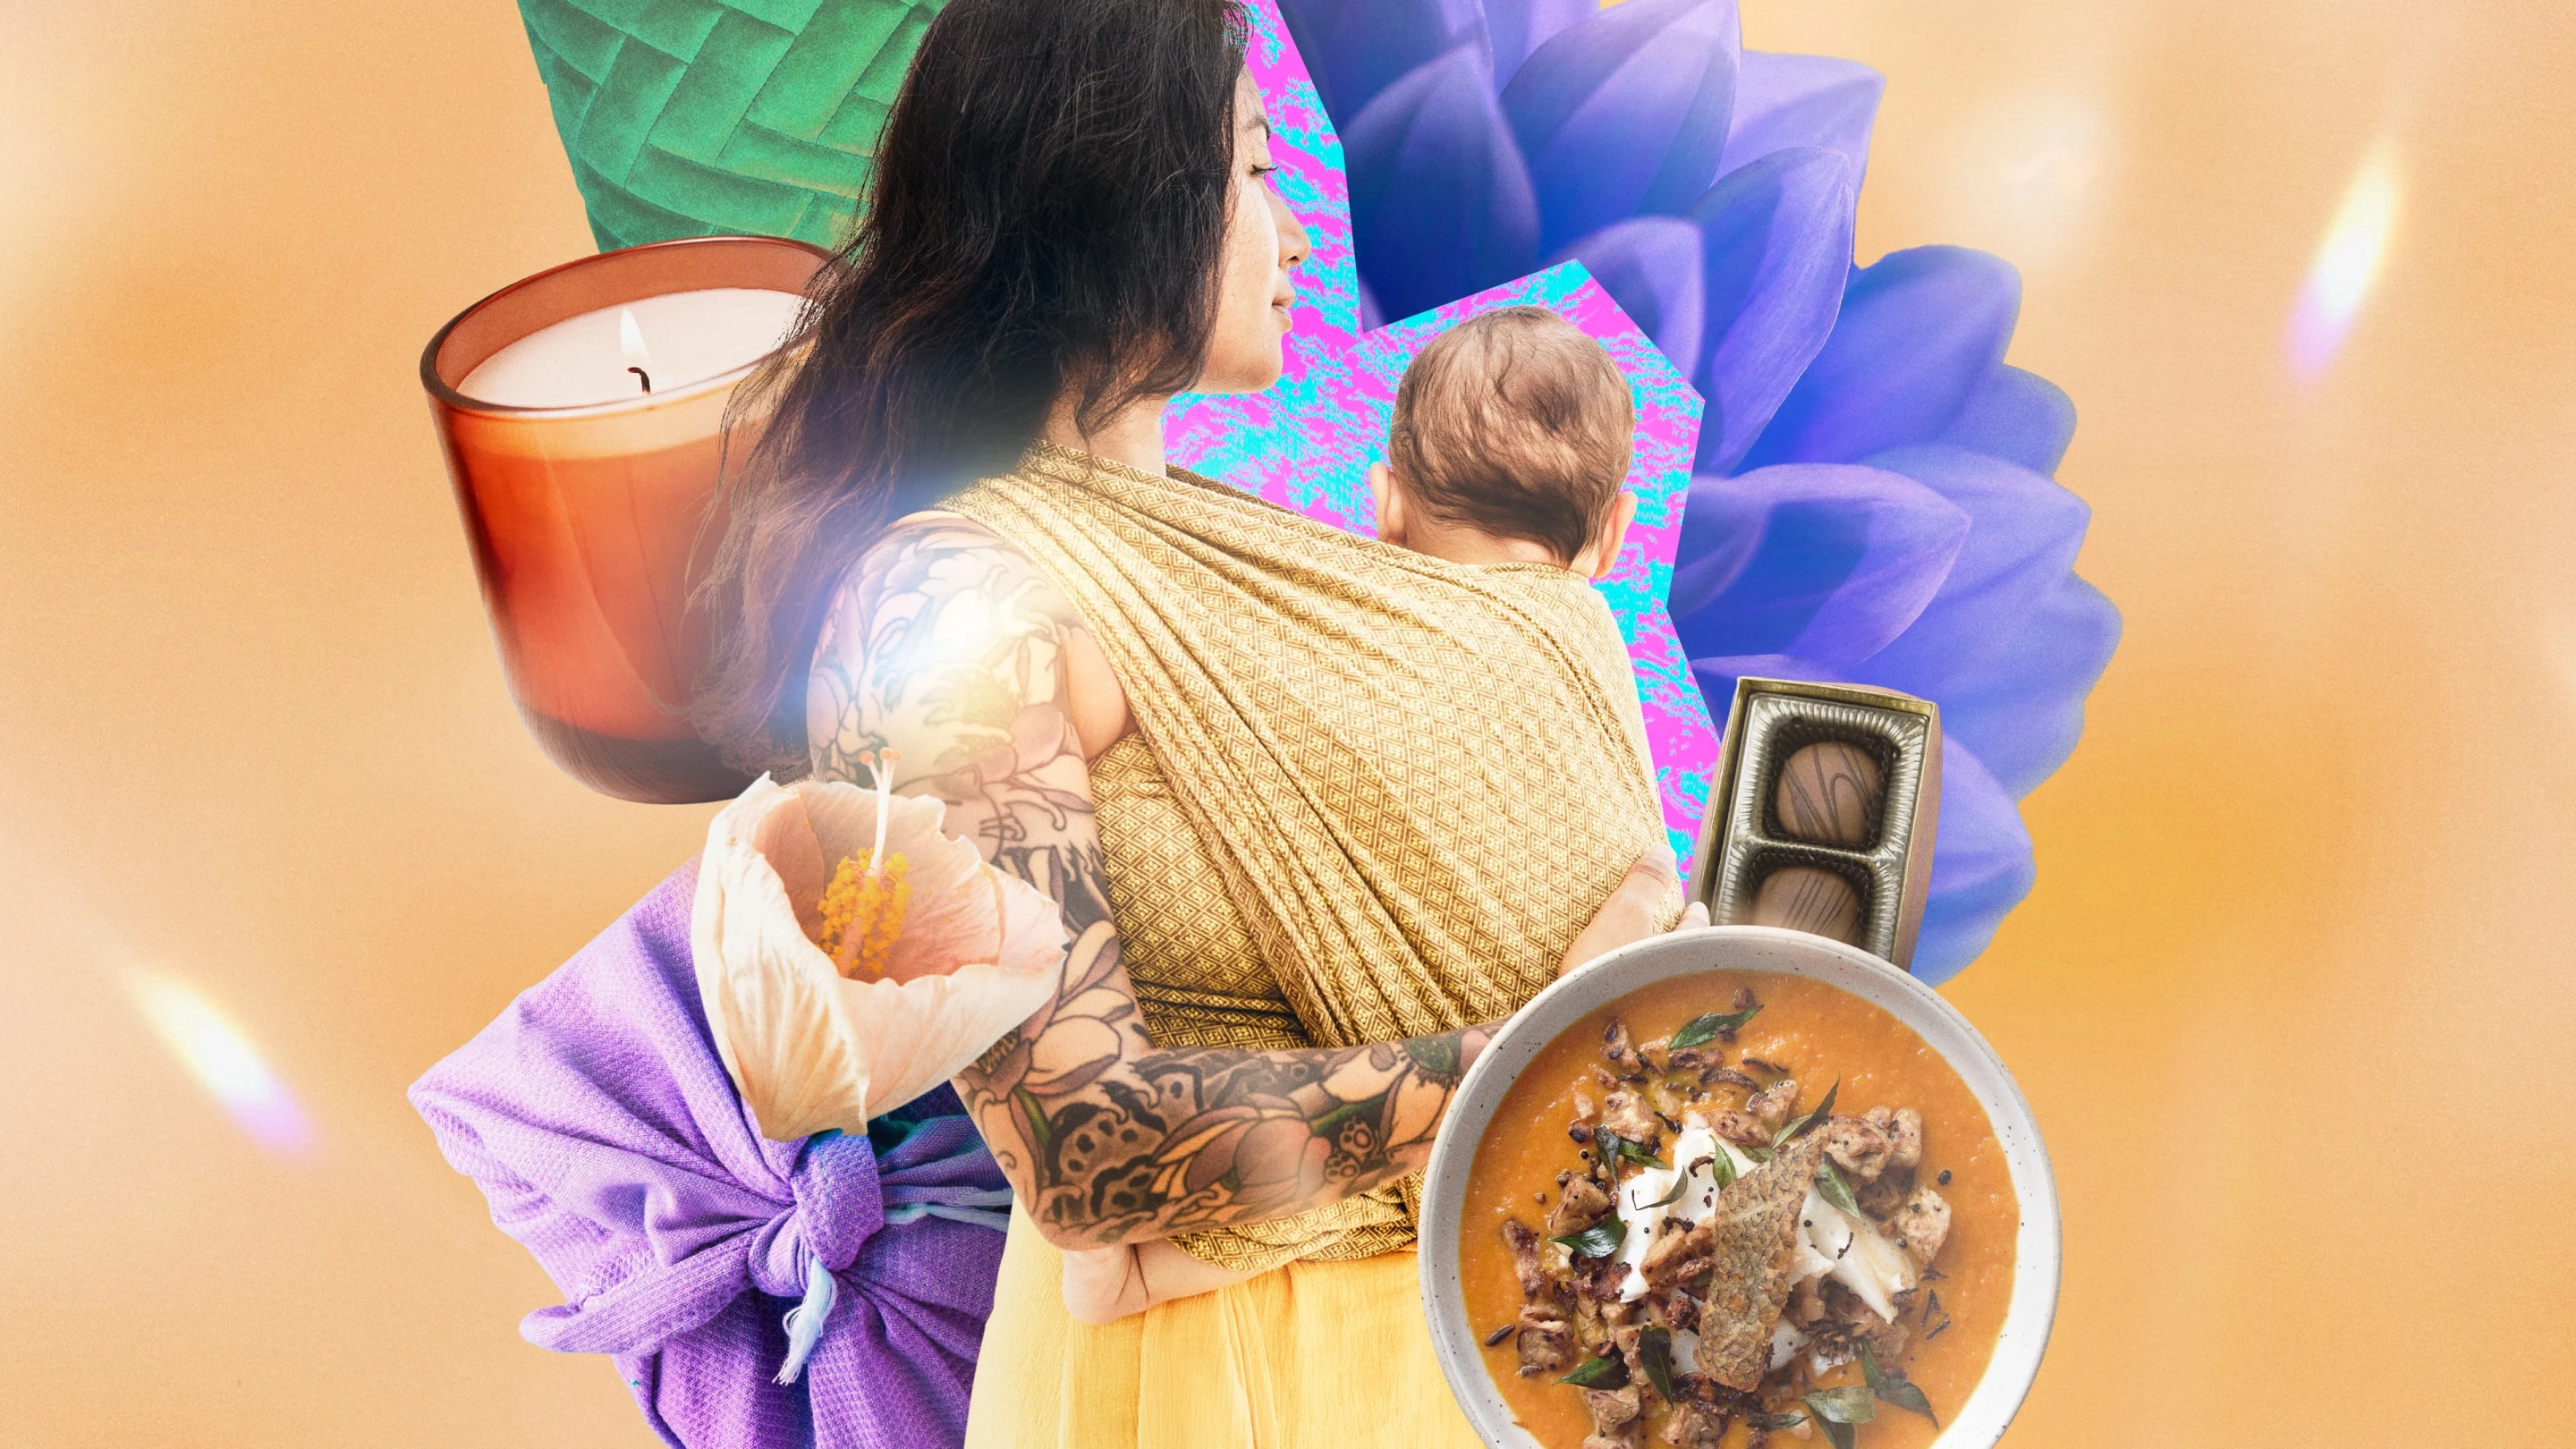 ろうそくや花びら、チョコレートの箱、スープ、ブランケットなどさまざまなアイテムのコラージュに囲まれた、赤ちゃんを抱っこしている、タトゥーの入った女性。